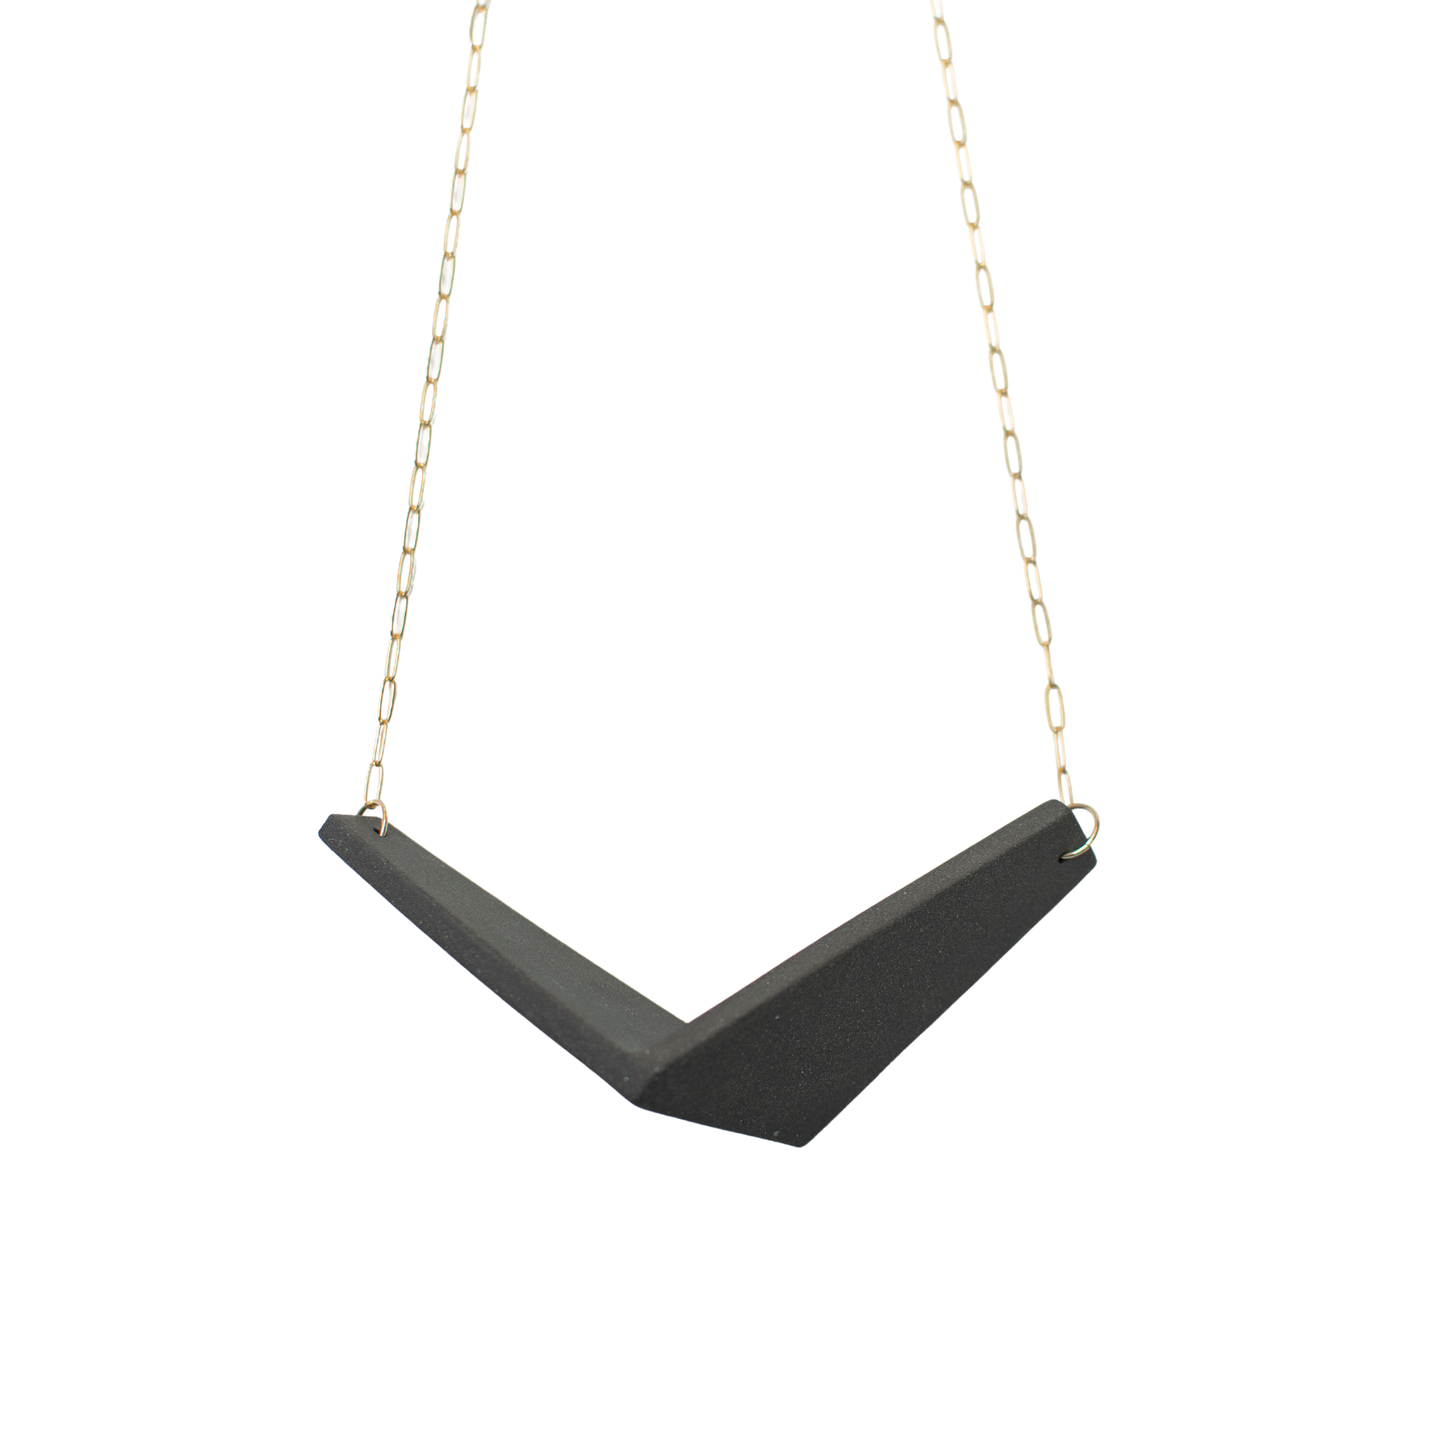 Original Quad Necklace - Size I-III